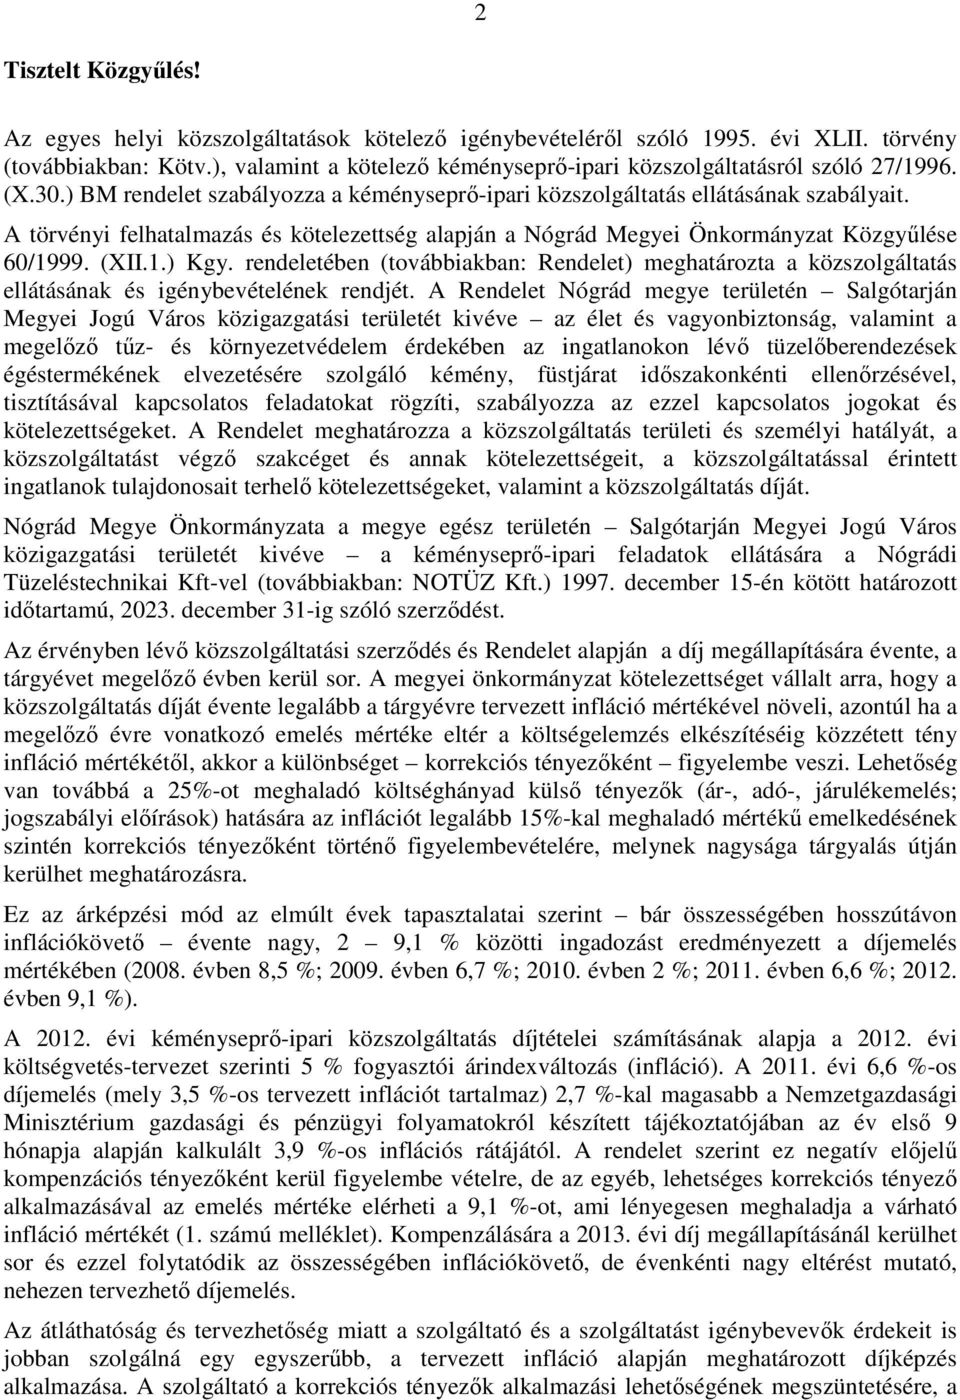 A törvényi felhatalmazás és kötelezettség alapján a Nógrád Megyei Önkormányzat Közgyűlése 60/1999. (XII.1.) Kgy.